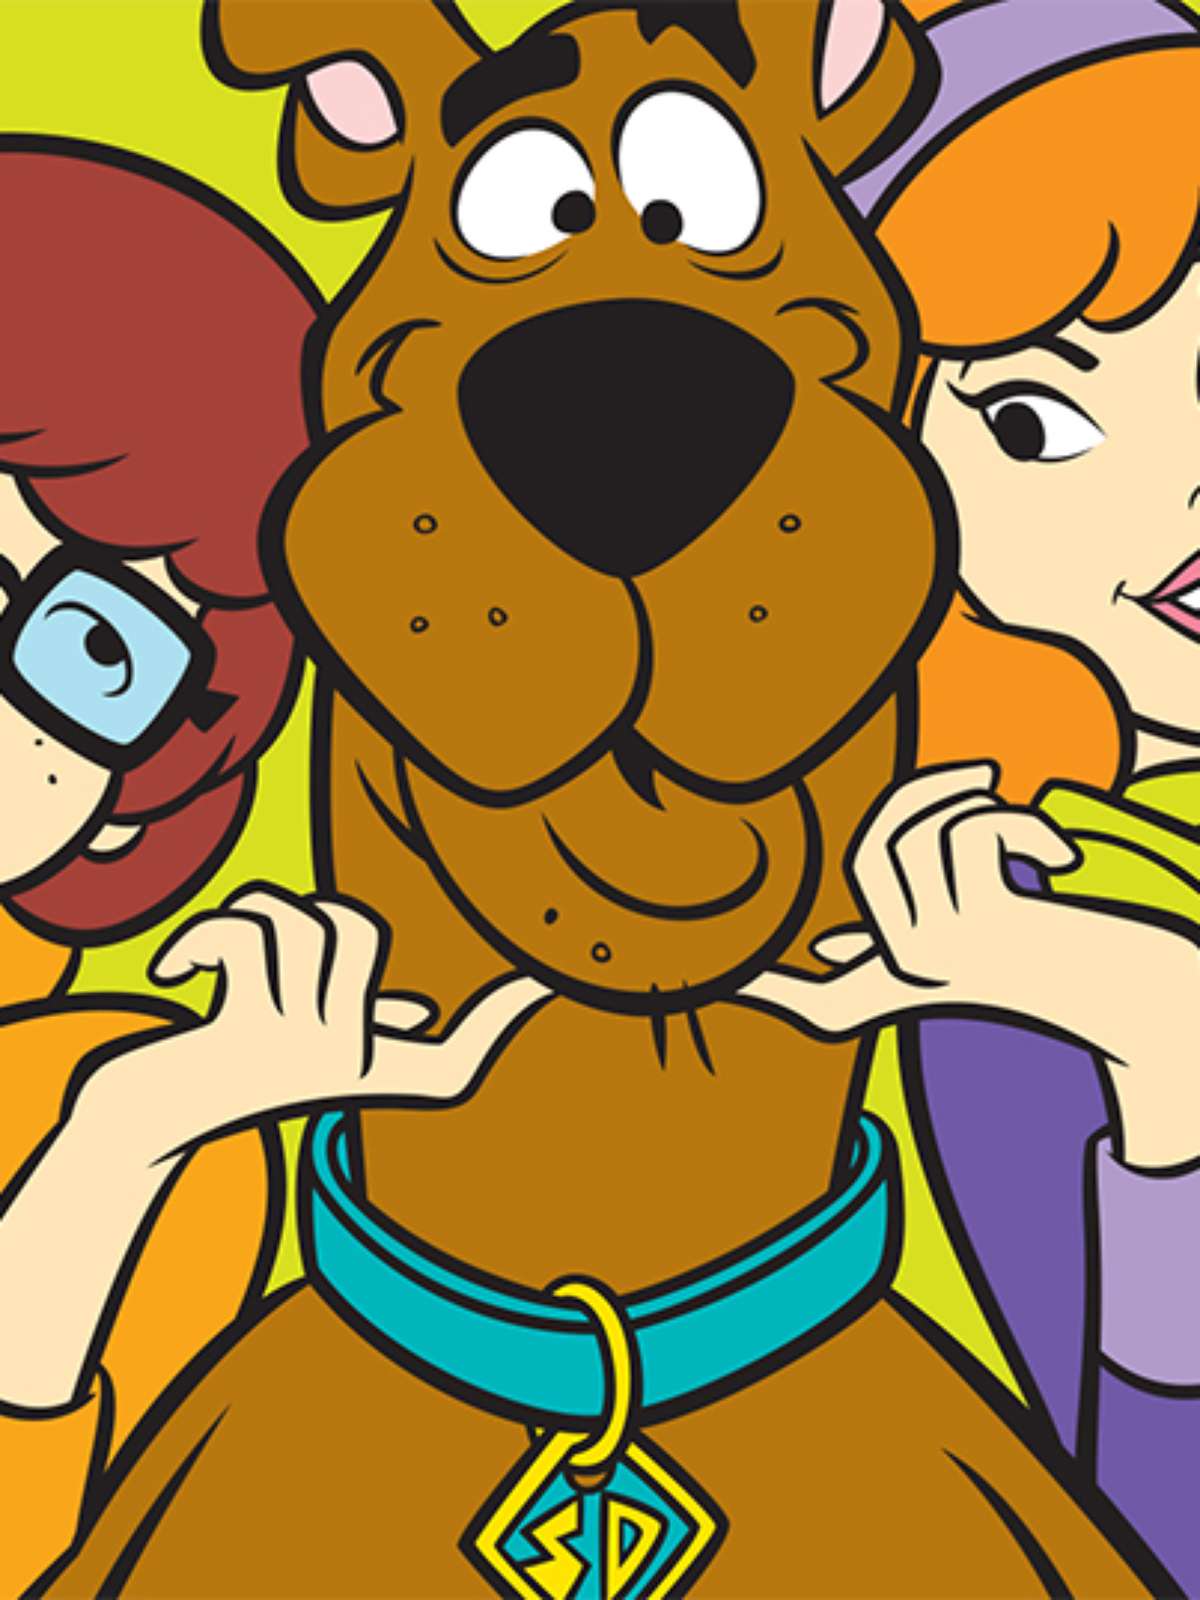 Série da Velma não vai ter Scooby-Doo